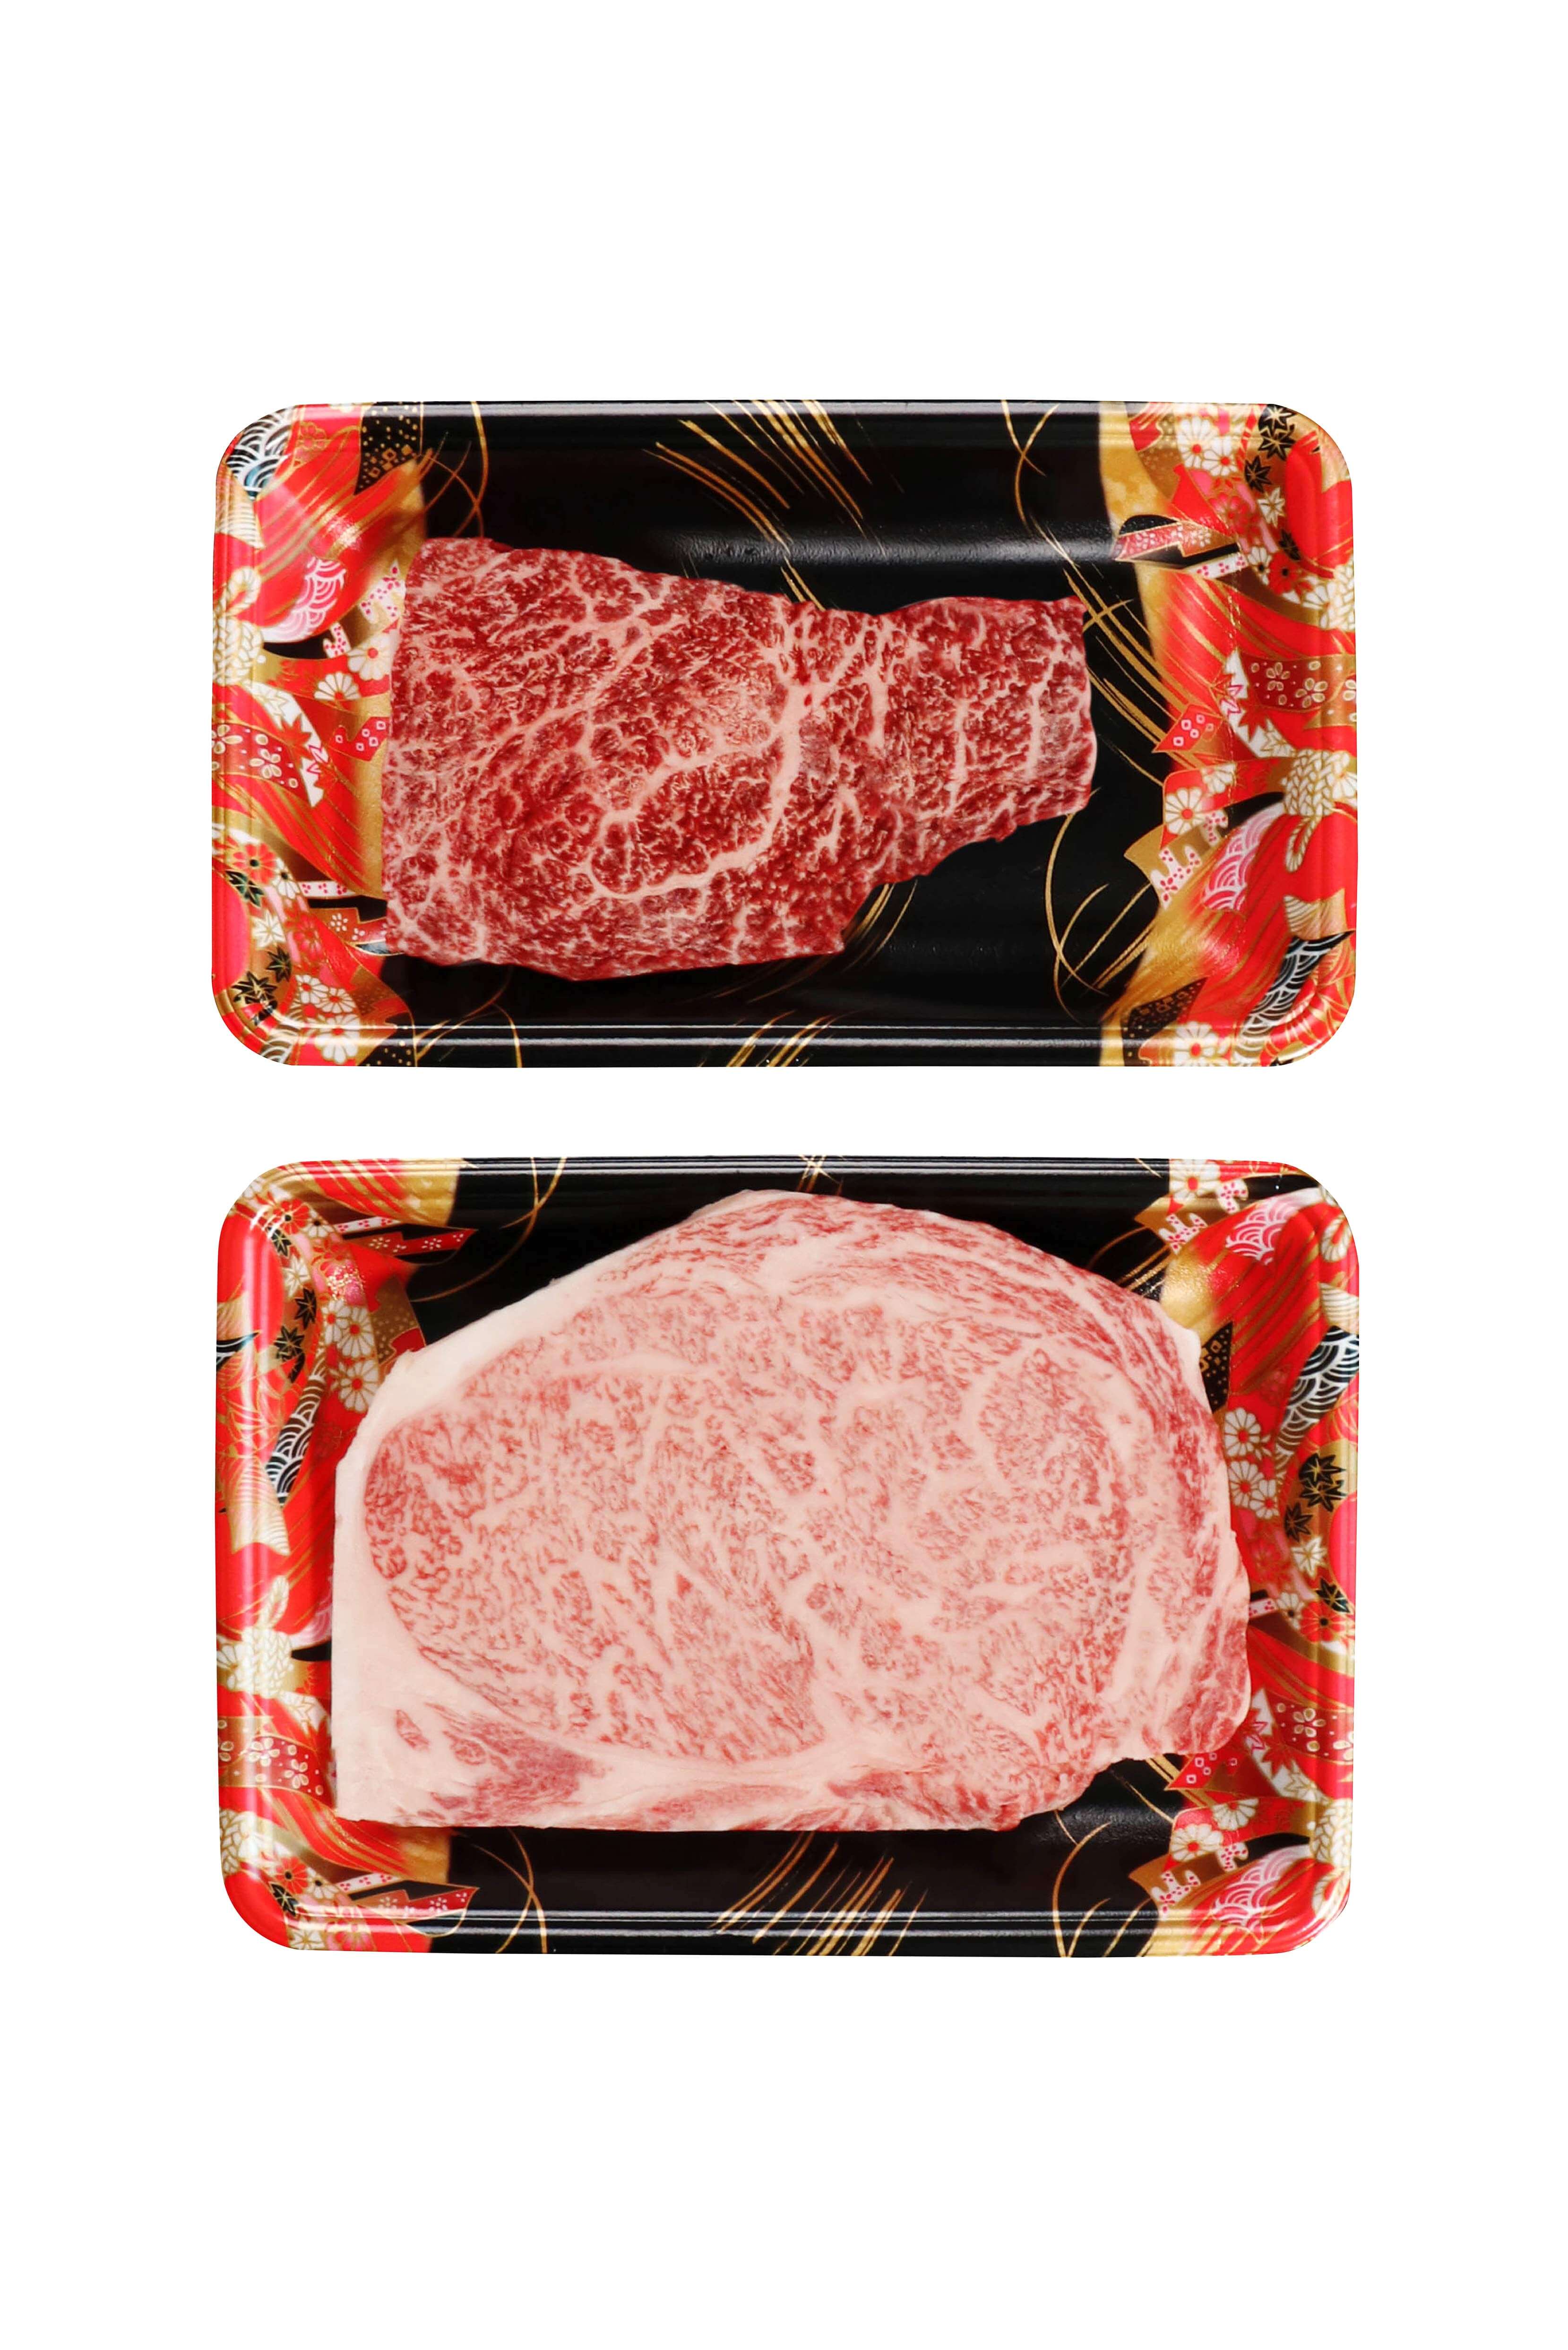 日式燒肉自己做！A5和牛燒肉有甚麼秘訣？